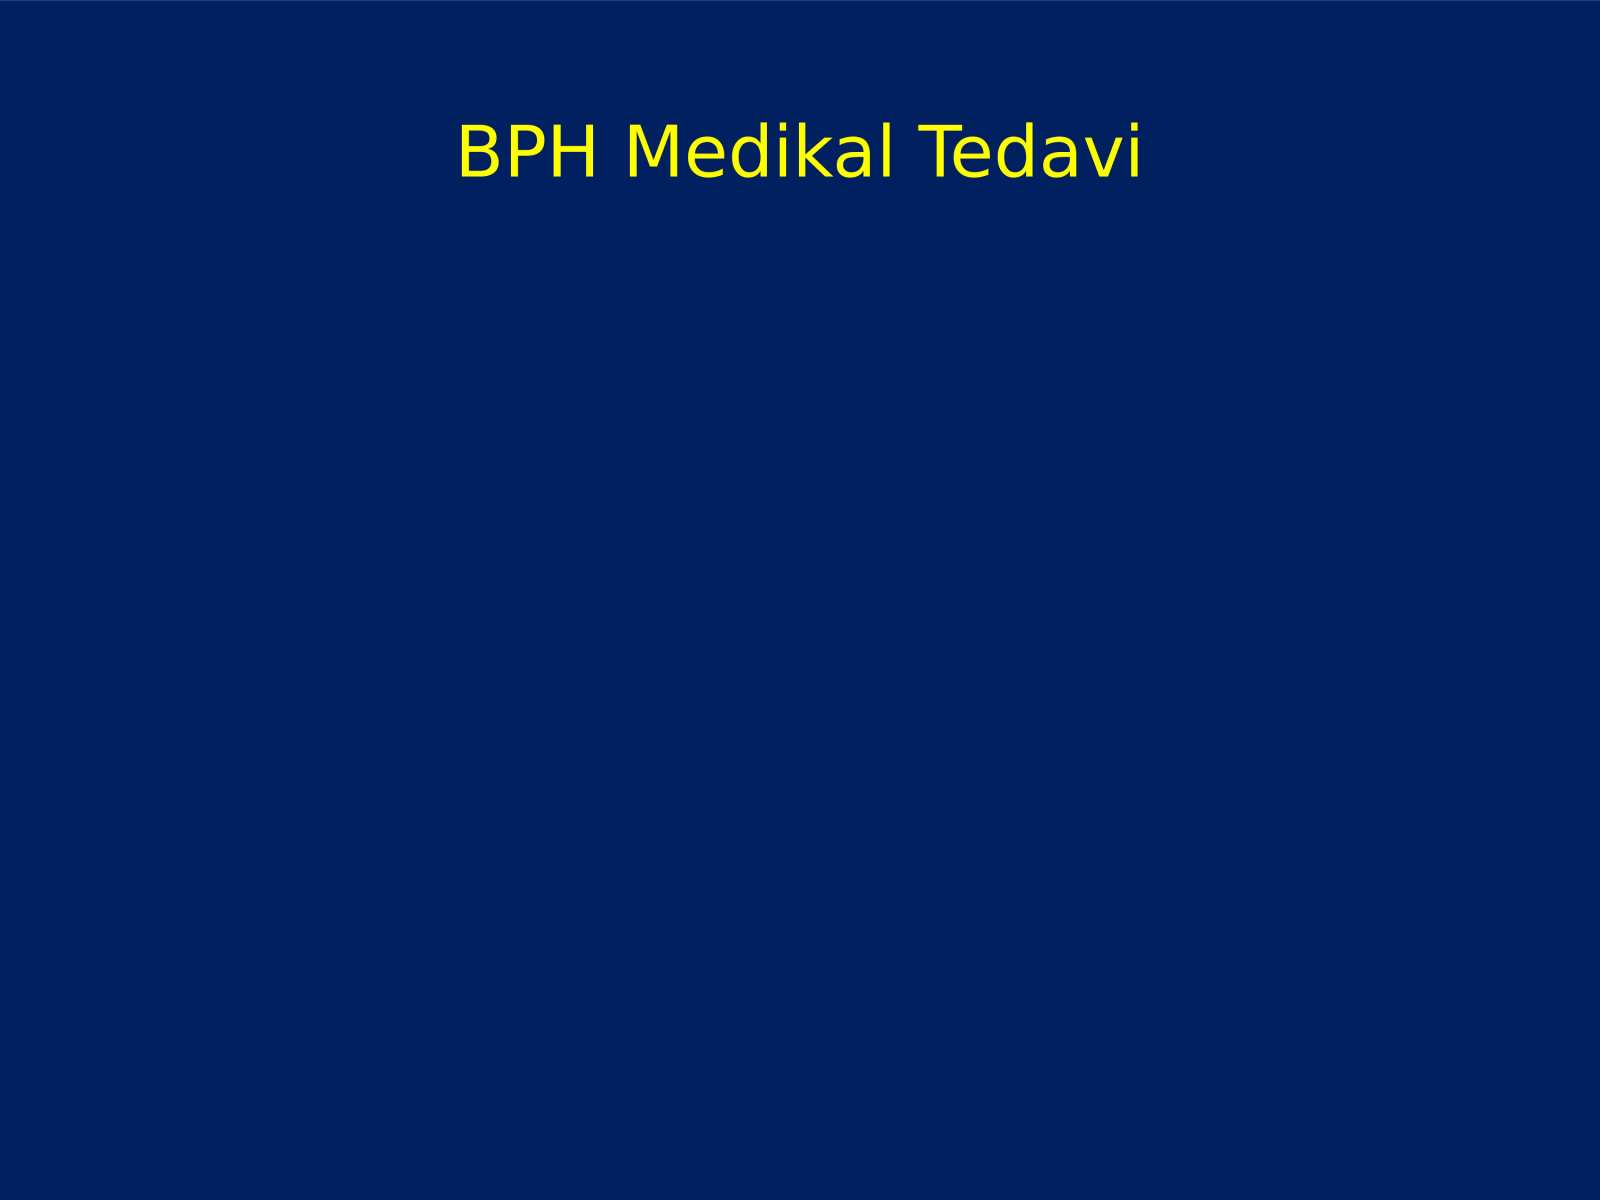 BPH Medikal Tedavisi ve Androlojik Cerrahi